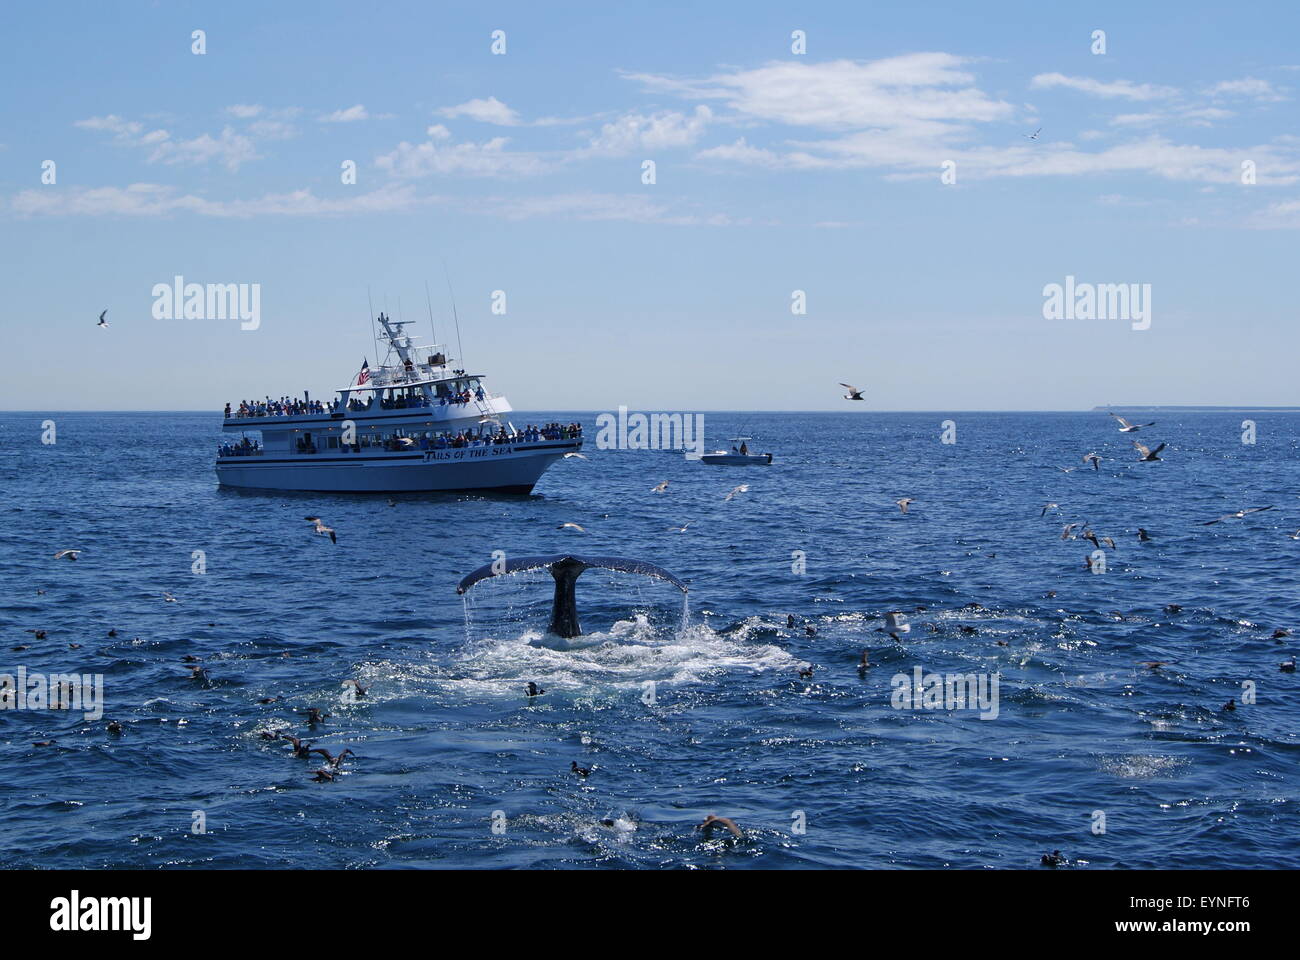 Los turistas en un barco de crucero de avistamiento de ballenas ver la cola fluke de una ballena jorobada como empezar a bucear. Foto de stock